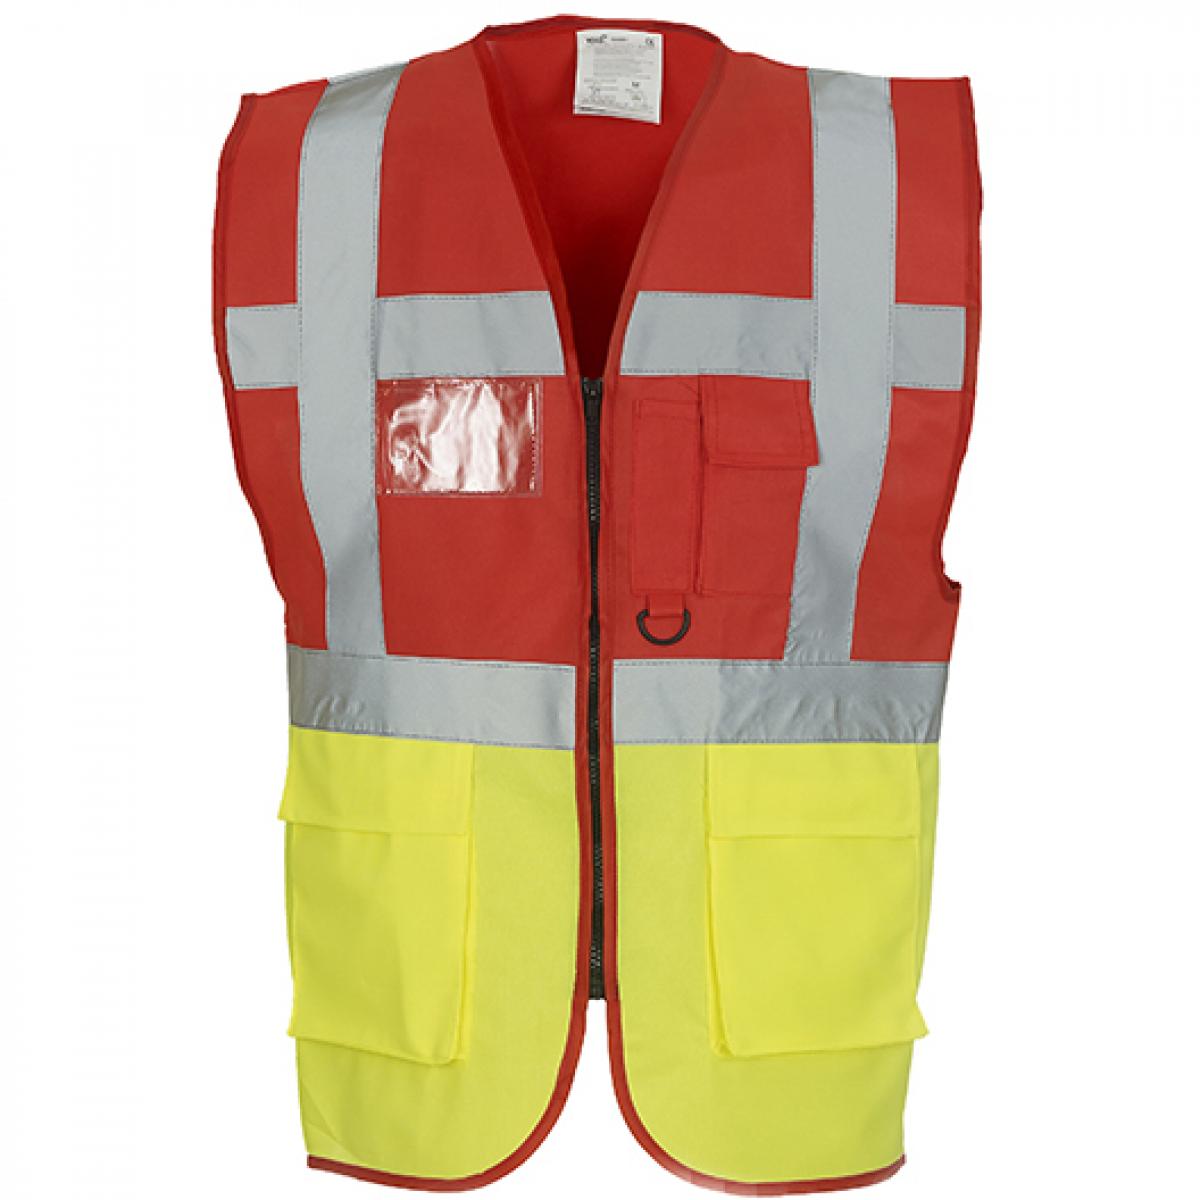 Hersteller: YOKO Herstellernummer: HVW801 Artikelbezeichnung: Herren Multi-Functional Executive Waistcoat Farbe: Red/Hi-Vis Yellow